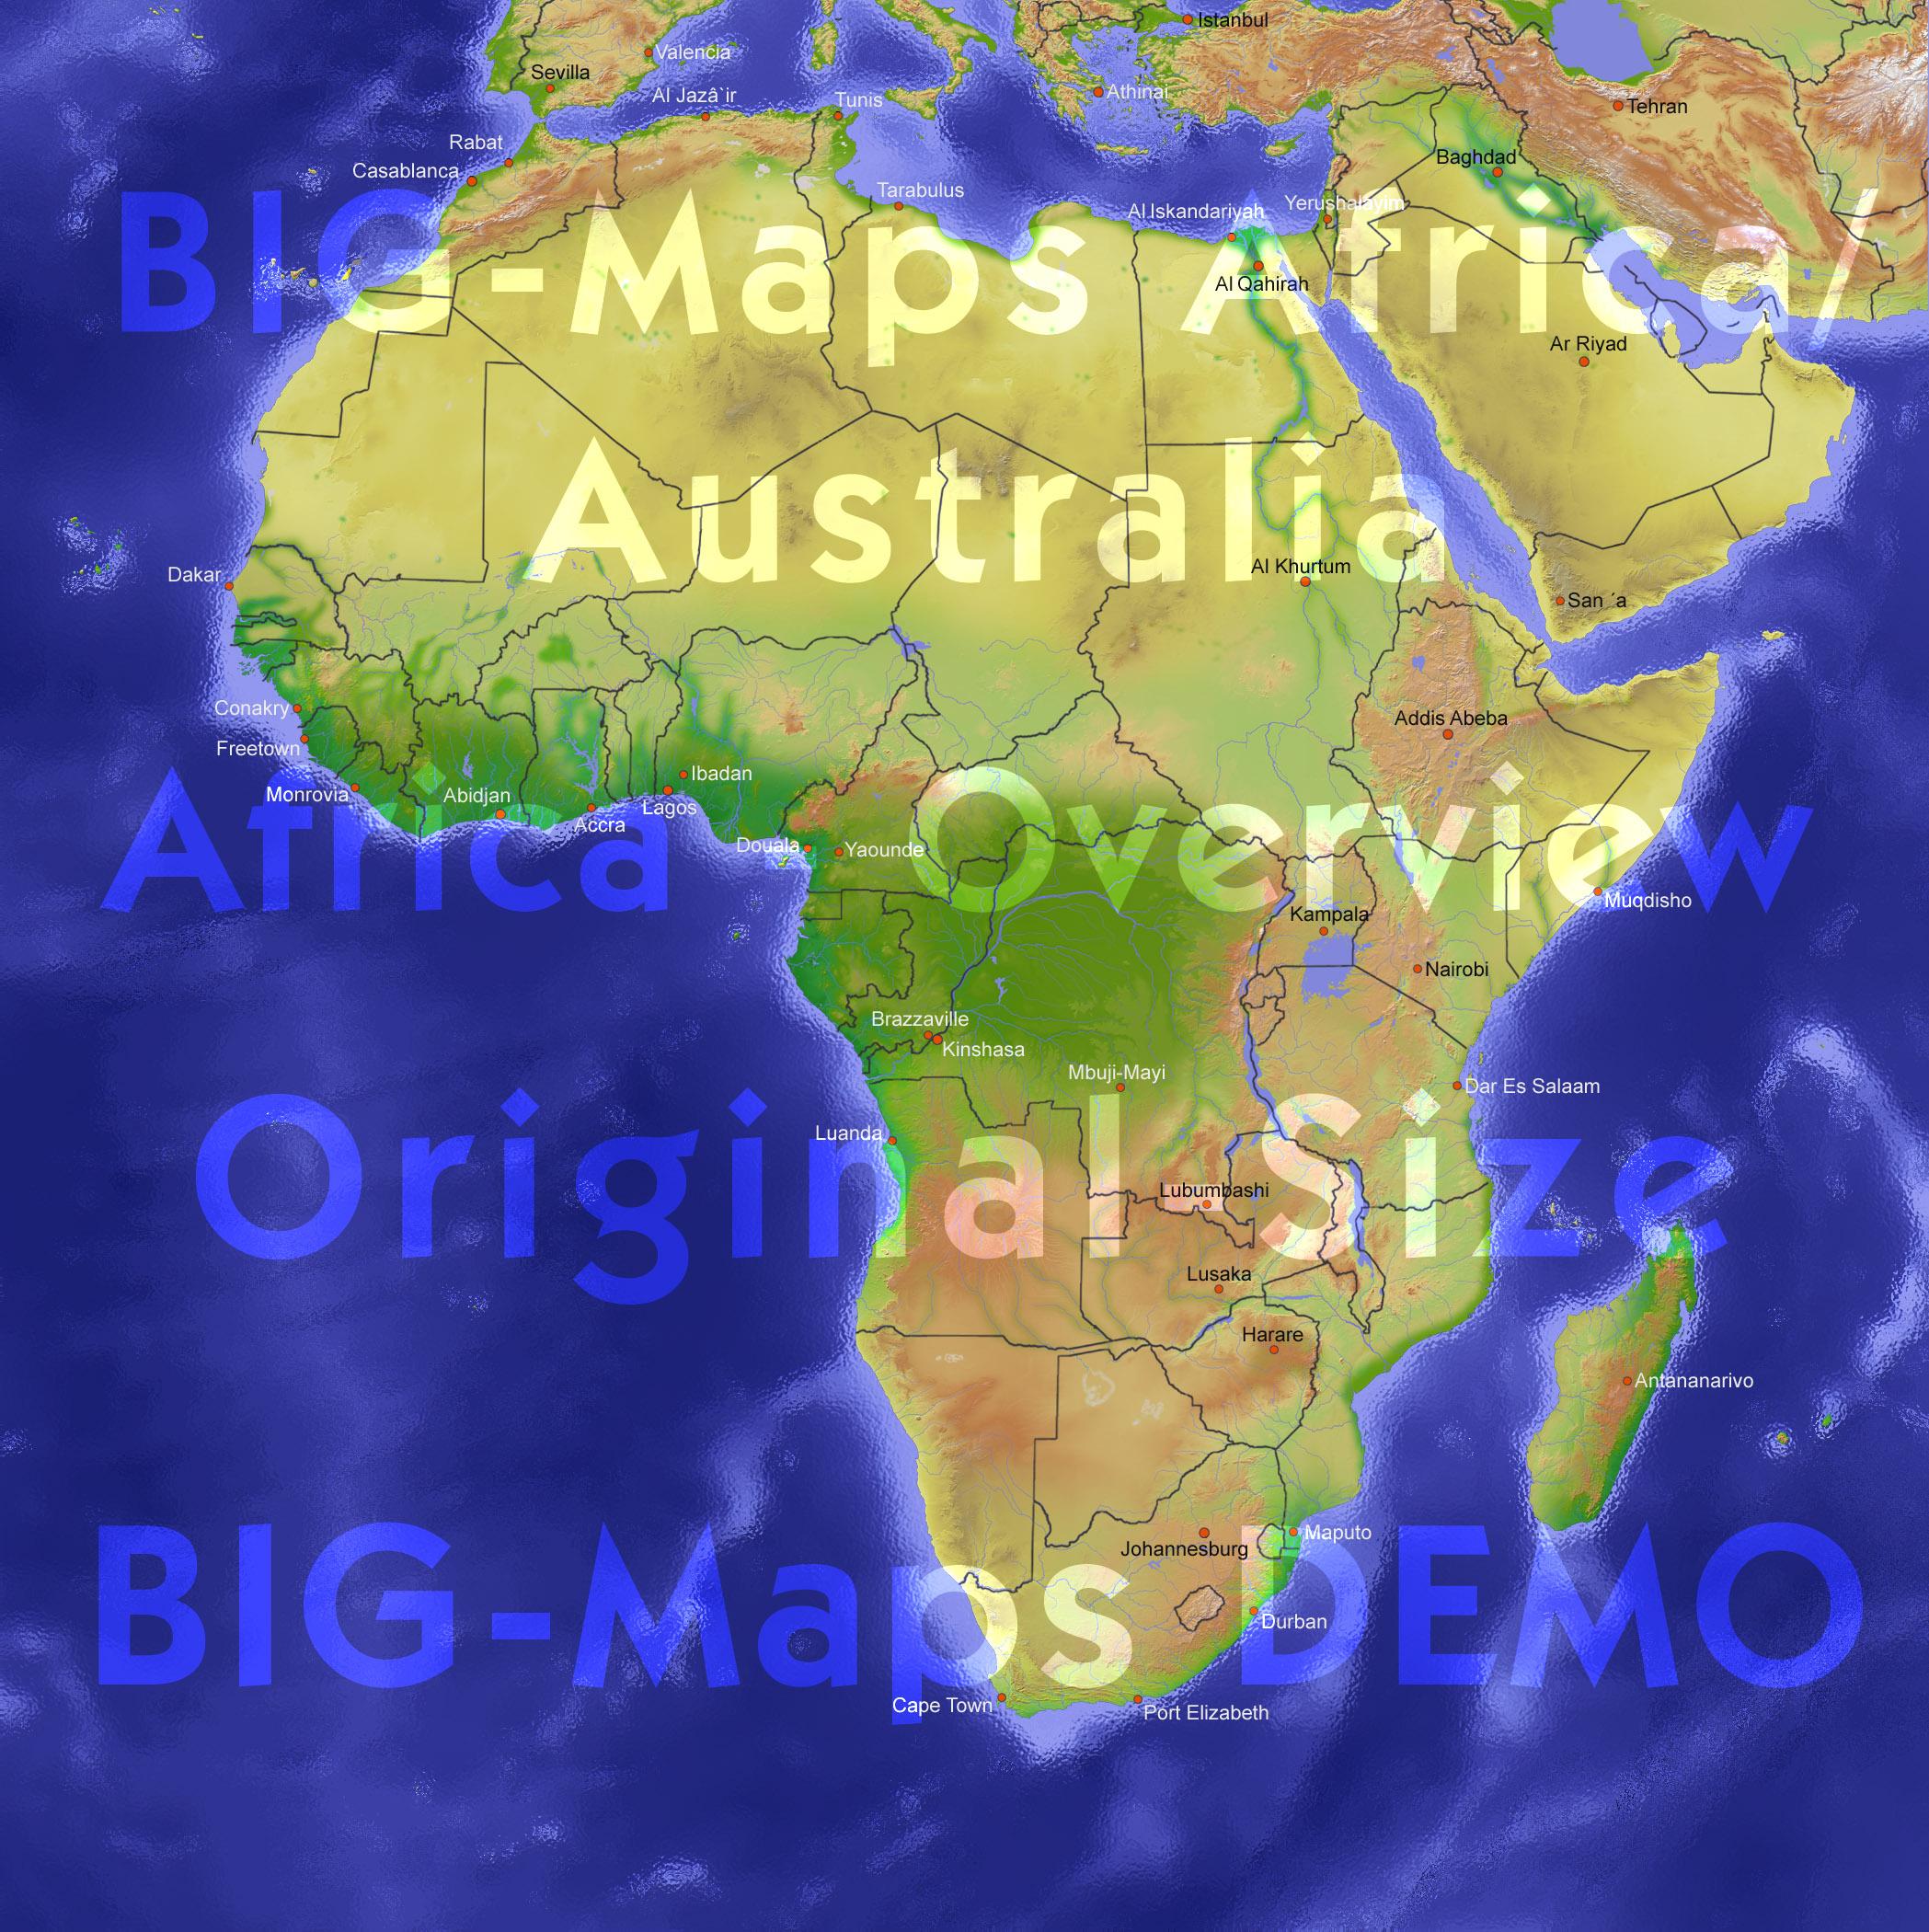 BIG-Maps_AF_AU_1e.jpg